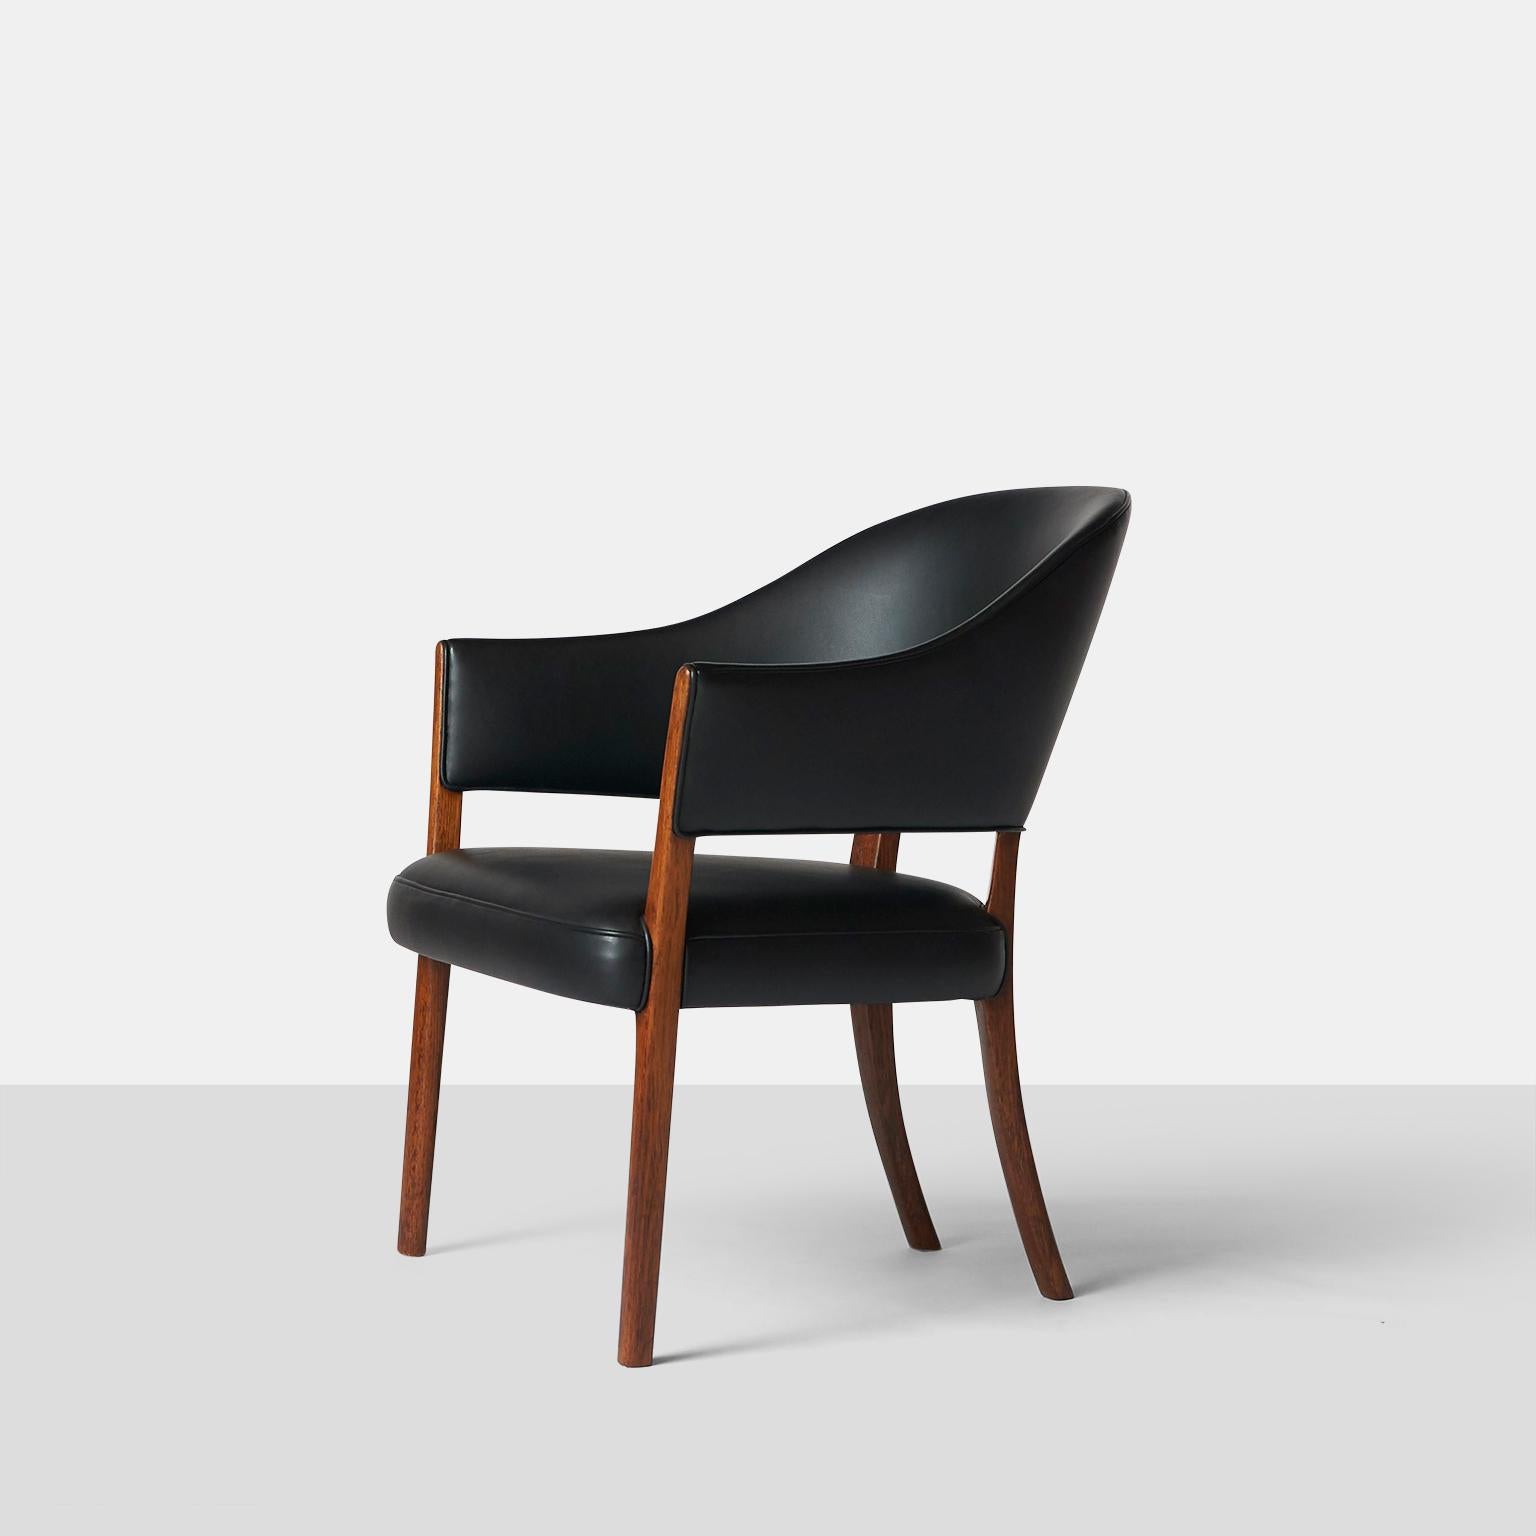 Un fauteuil avec un cadre en bois de rose. Assise et dossier garnis de cuir noir patiné. Fabriqué par l'ébéniste A. J. Iversen, Copenhague. Le modèle a été présenté à l'exposition de la guilde des ébénistes de Copenhague en 1962.

Refini en cuir